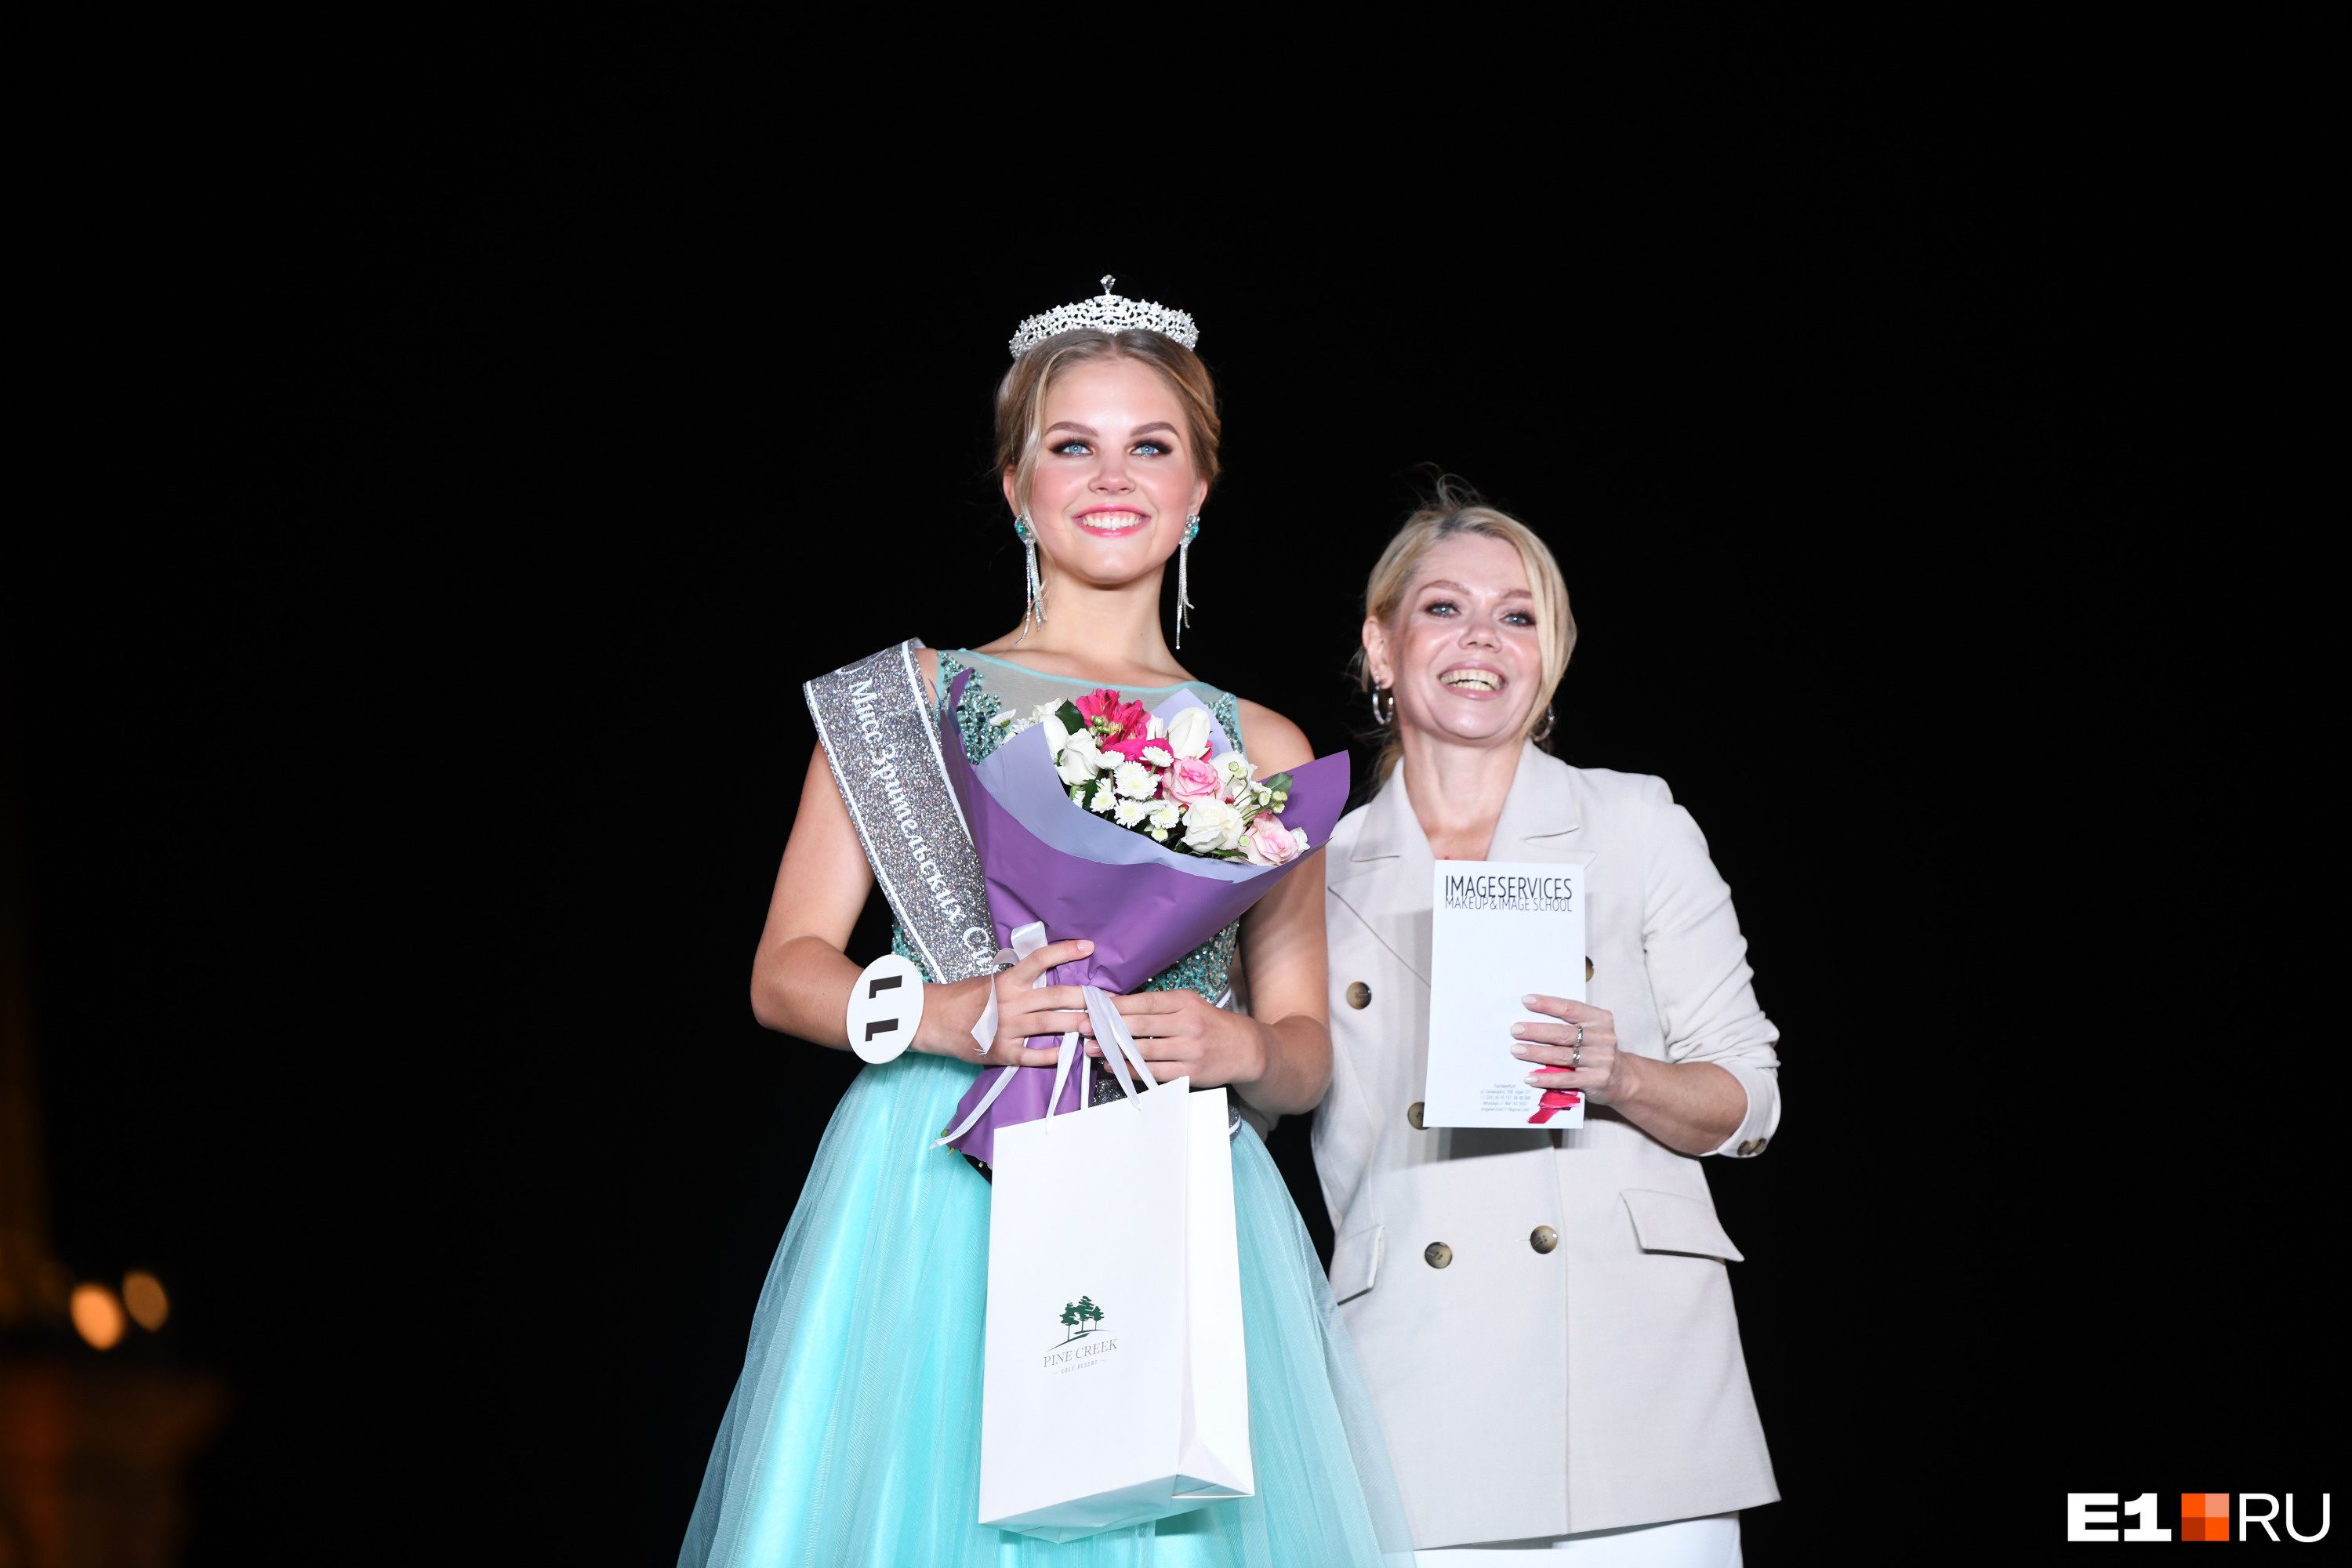 Сначала Злата завоевала титул мисс зрительских симпатий по итогам голосования на Е1.RU